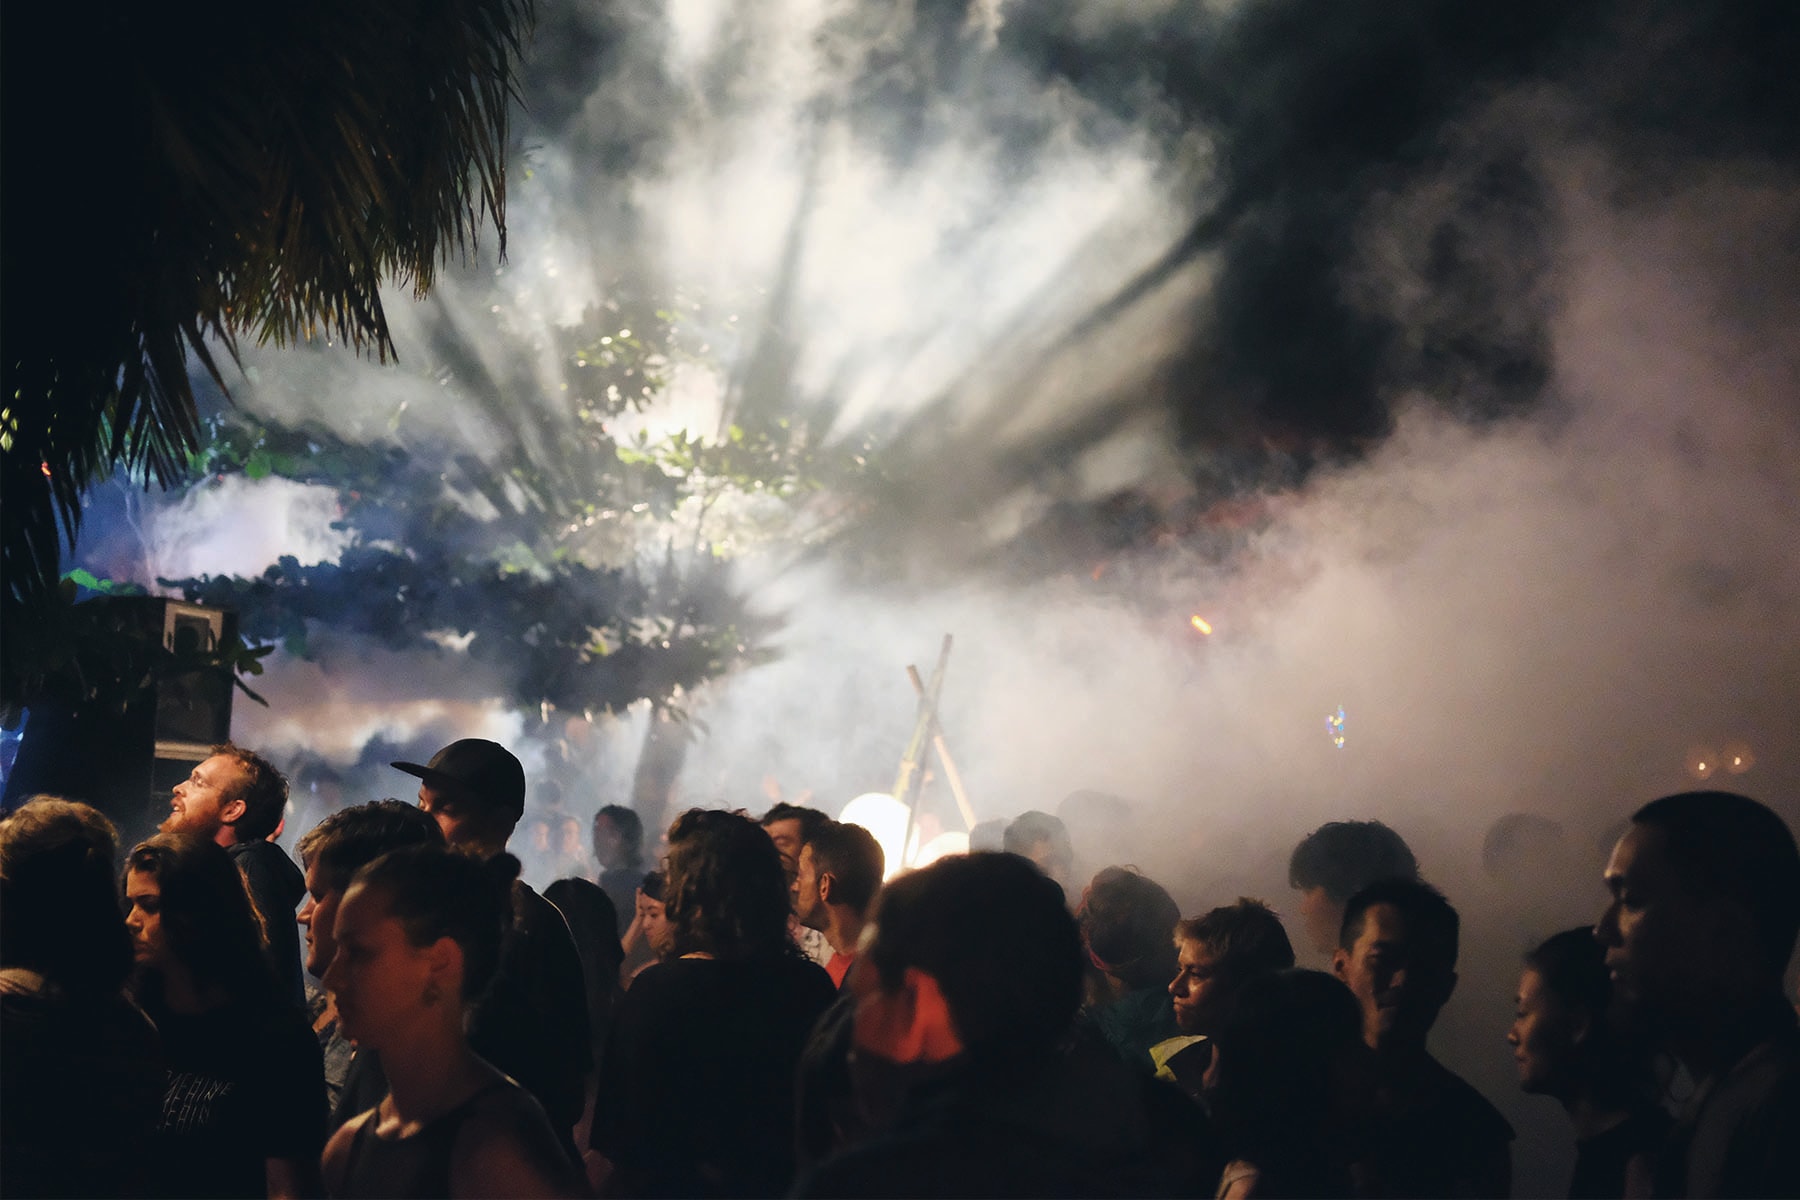 知名戶外派對「Organik Festival 有機音樂祭」睽違兩年正式登場